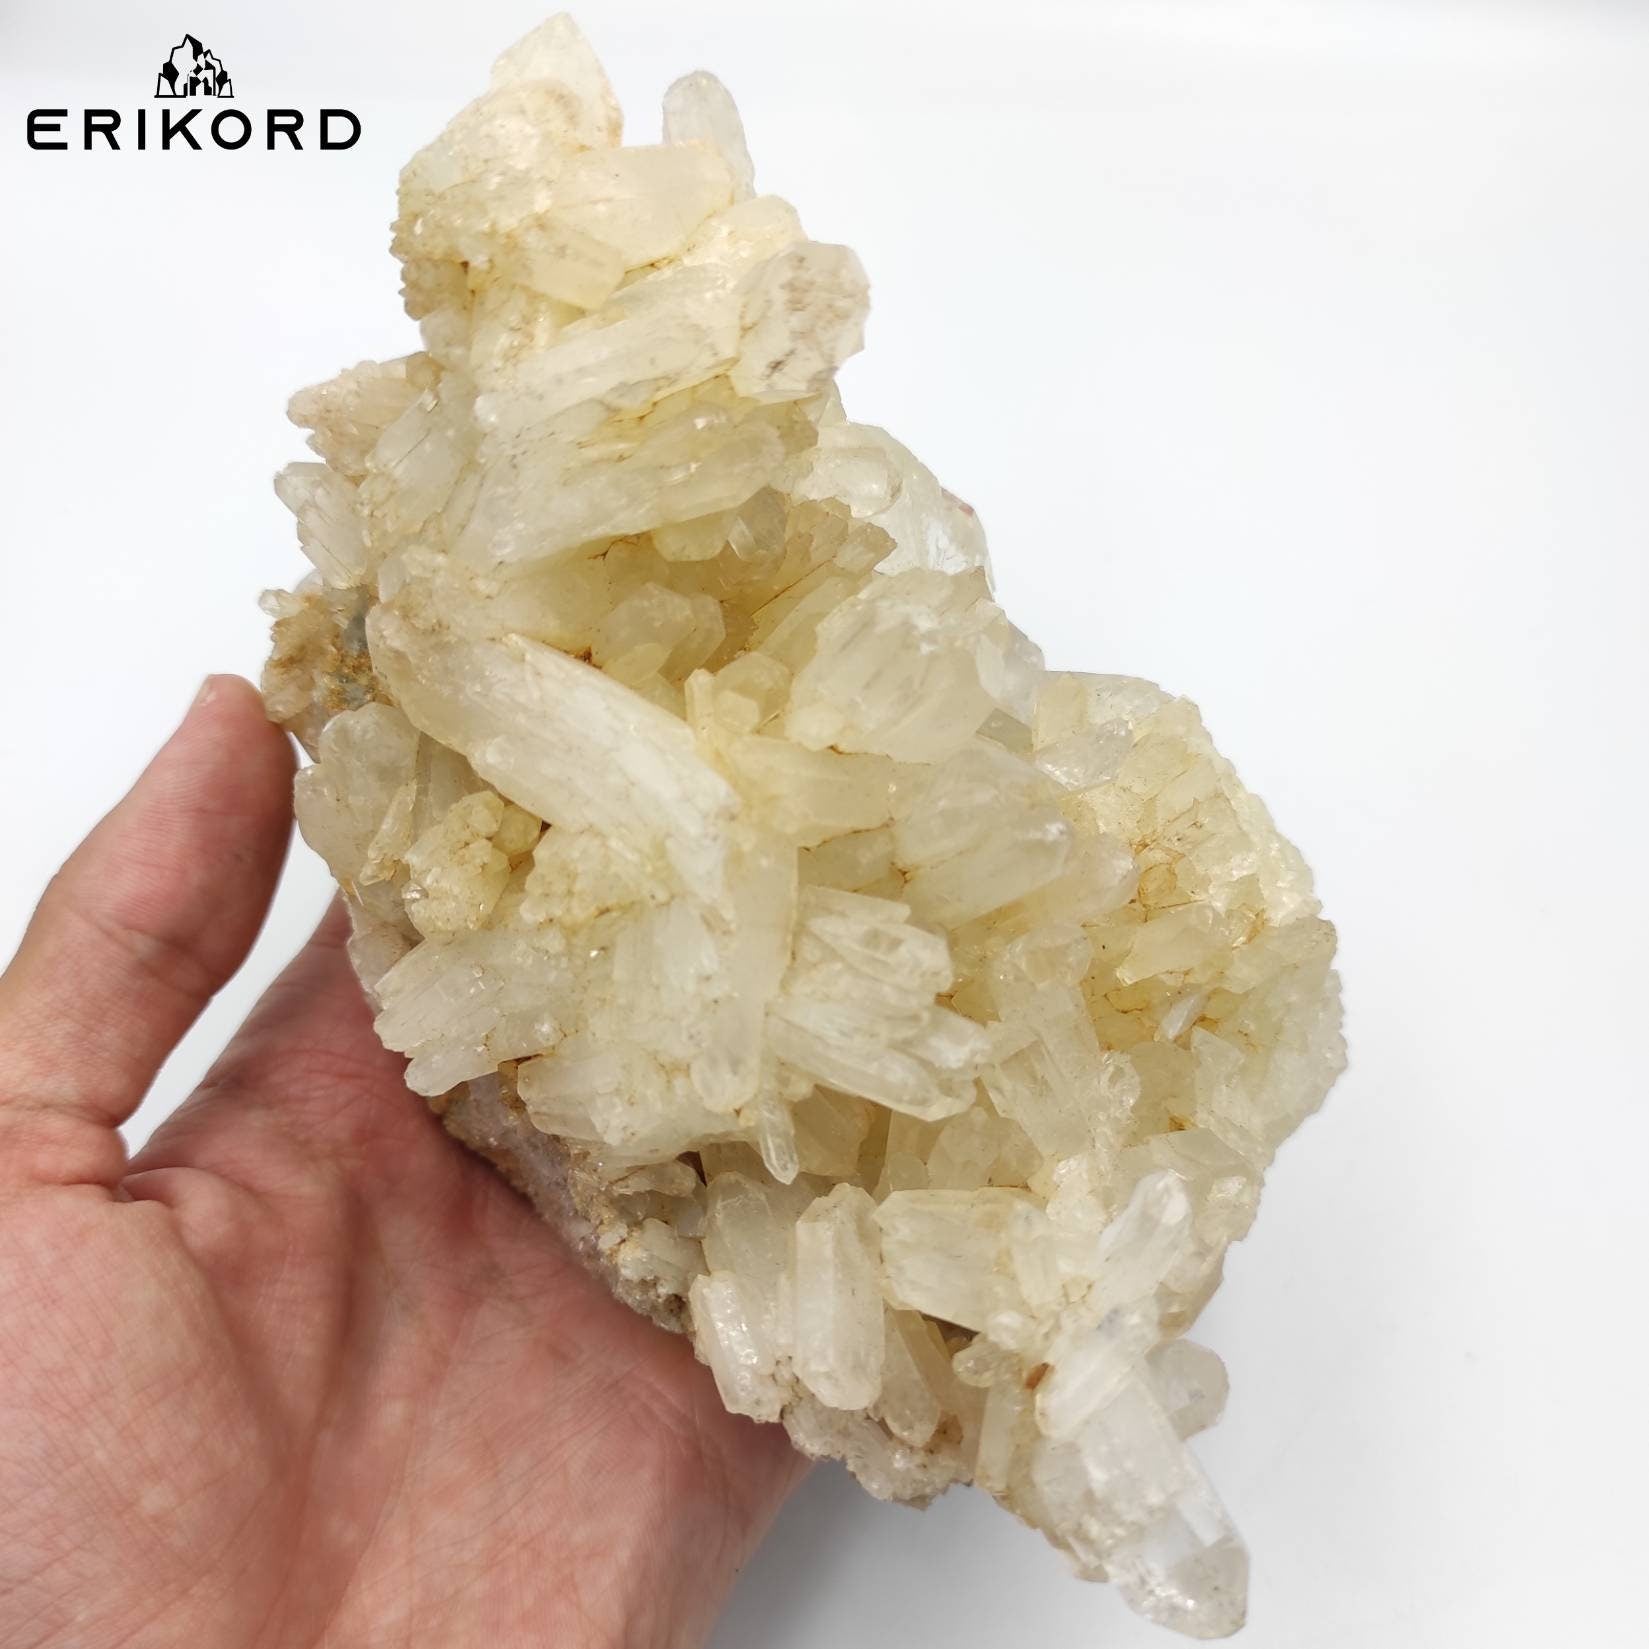 948g Large Quartz Crystal Cluster Natural Clear Quartz Mineral Yellow Quartz Crystals Pakistan Rough Quartz Specimen Natural Raw Quartz